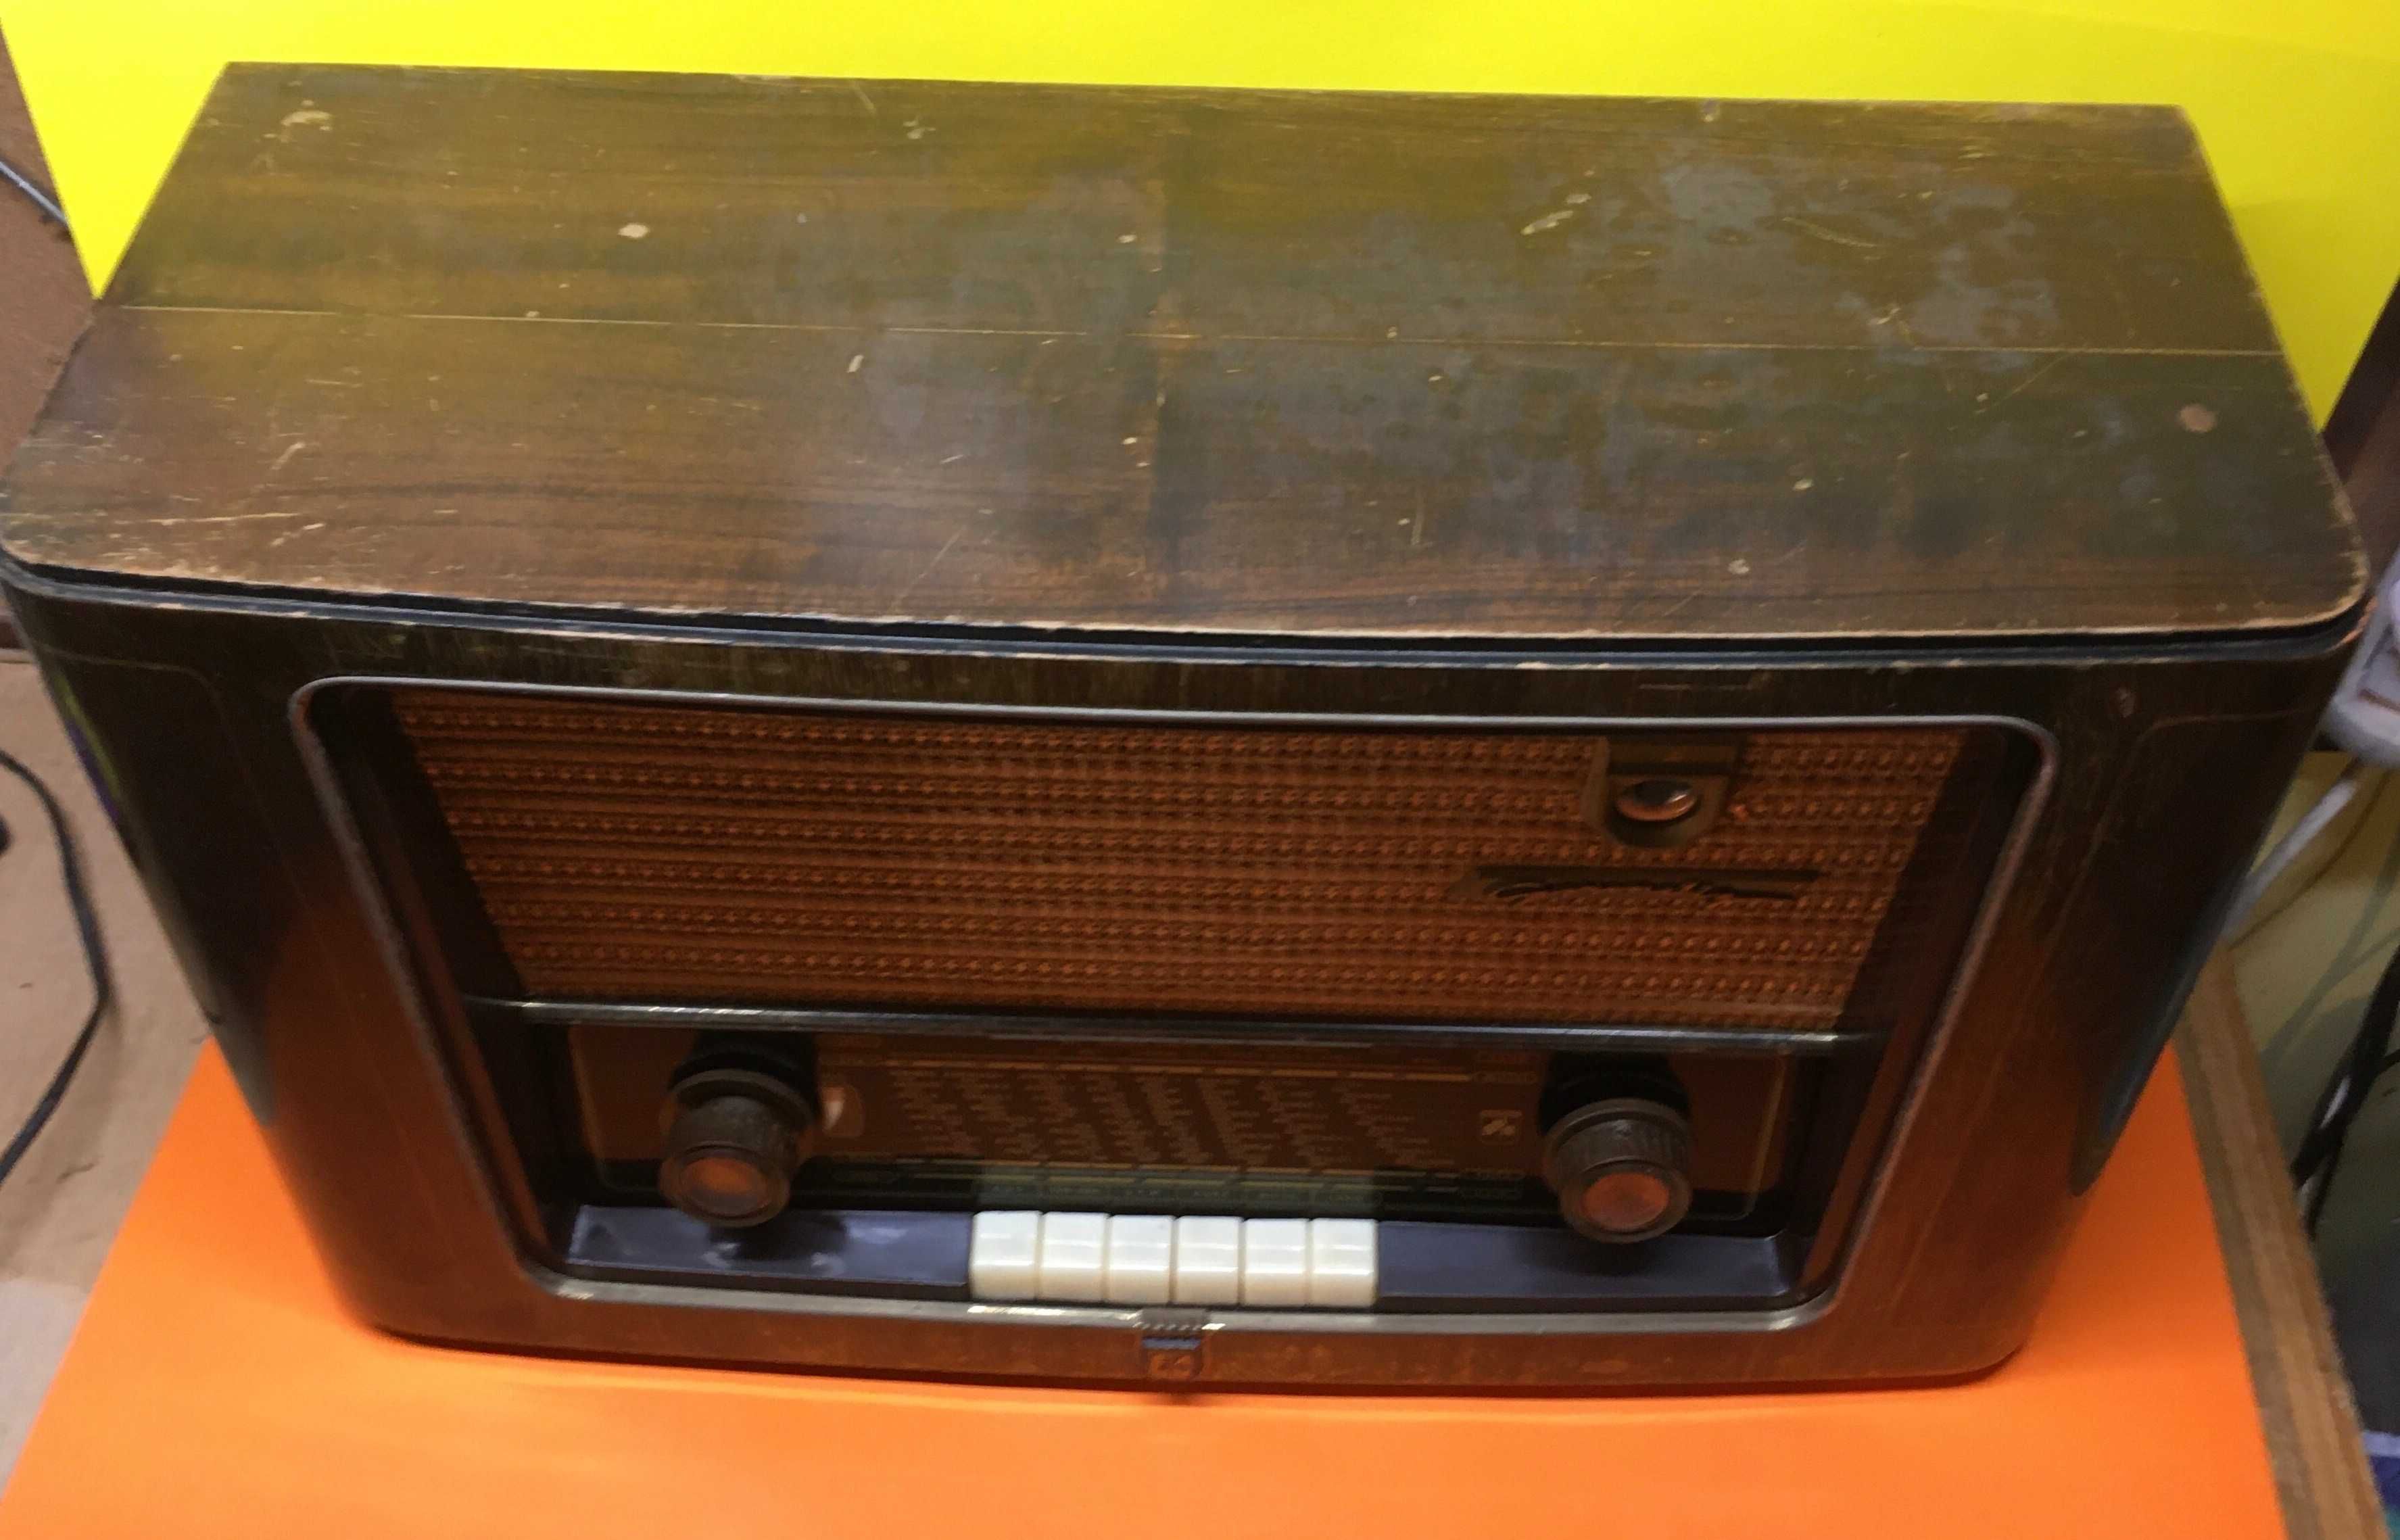 Ретро Радио Grundic Type 2012 /1953 година